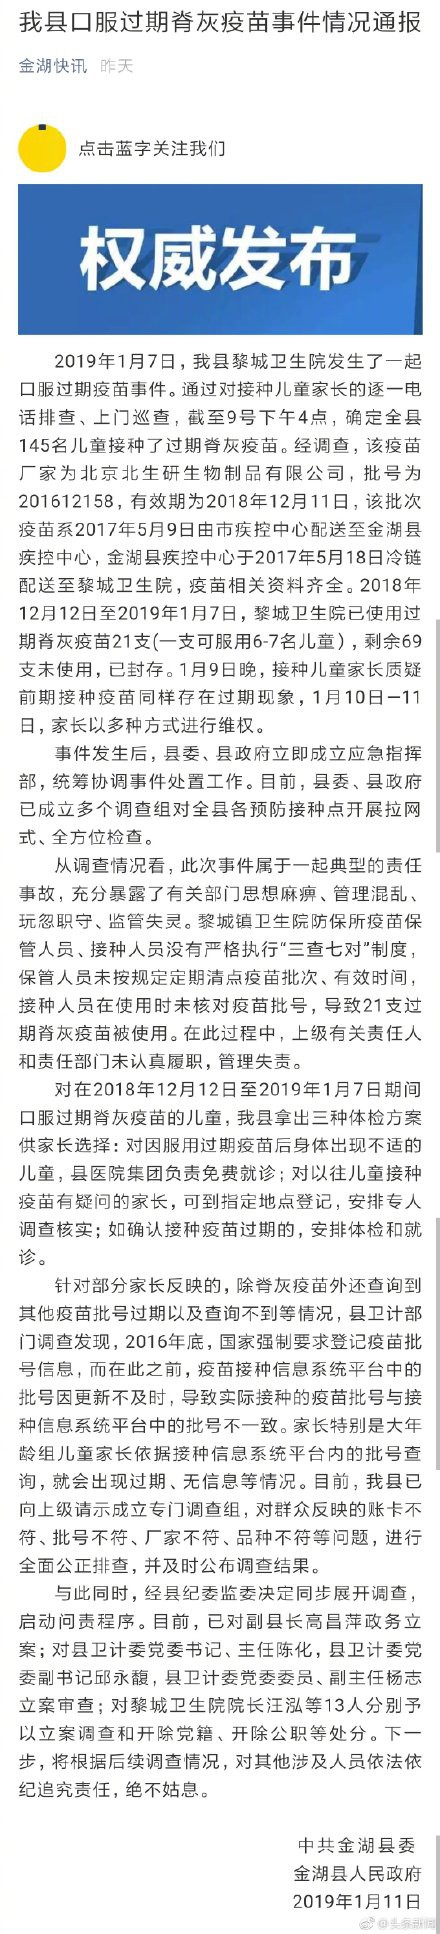 江苏金湖县回应“其他疫苗疑过期”：已成立专门调查组